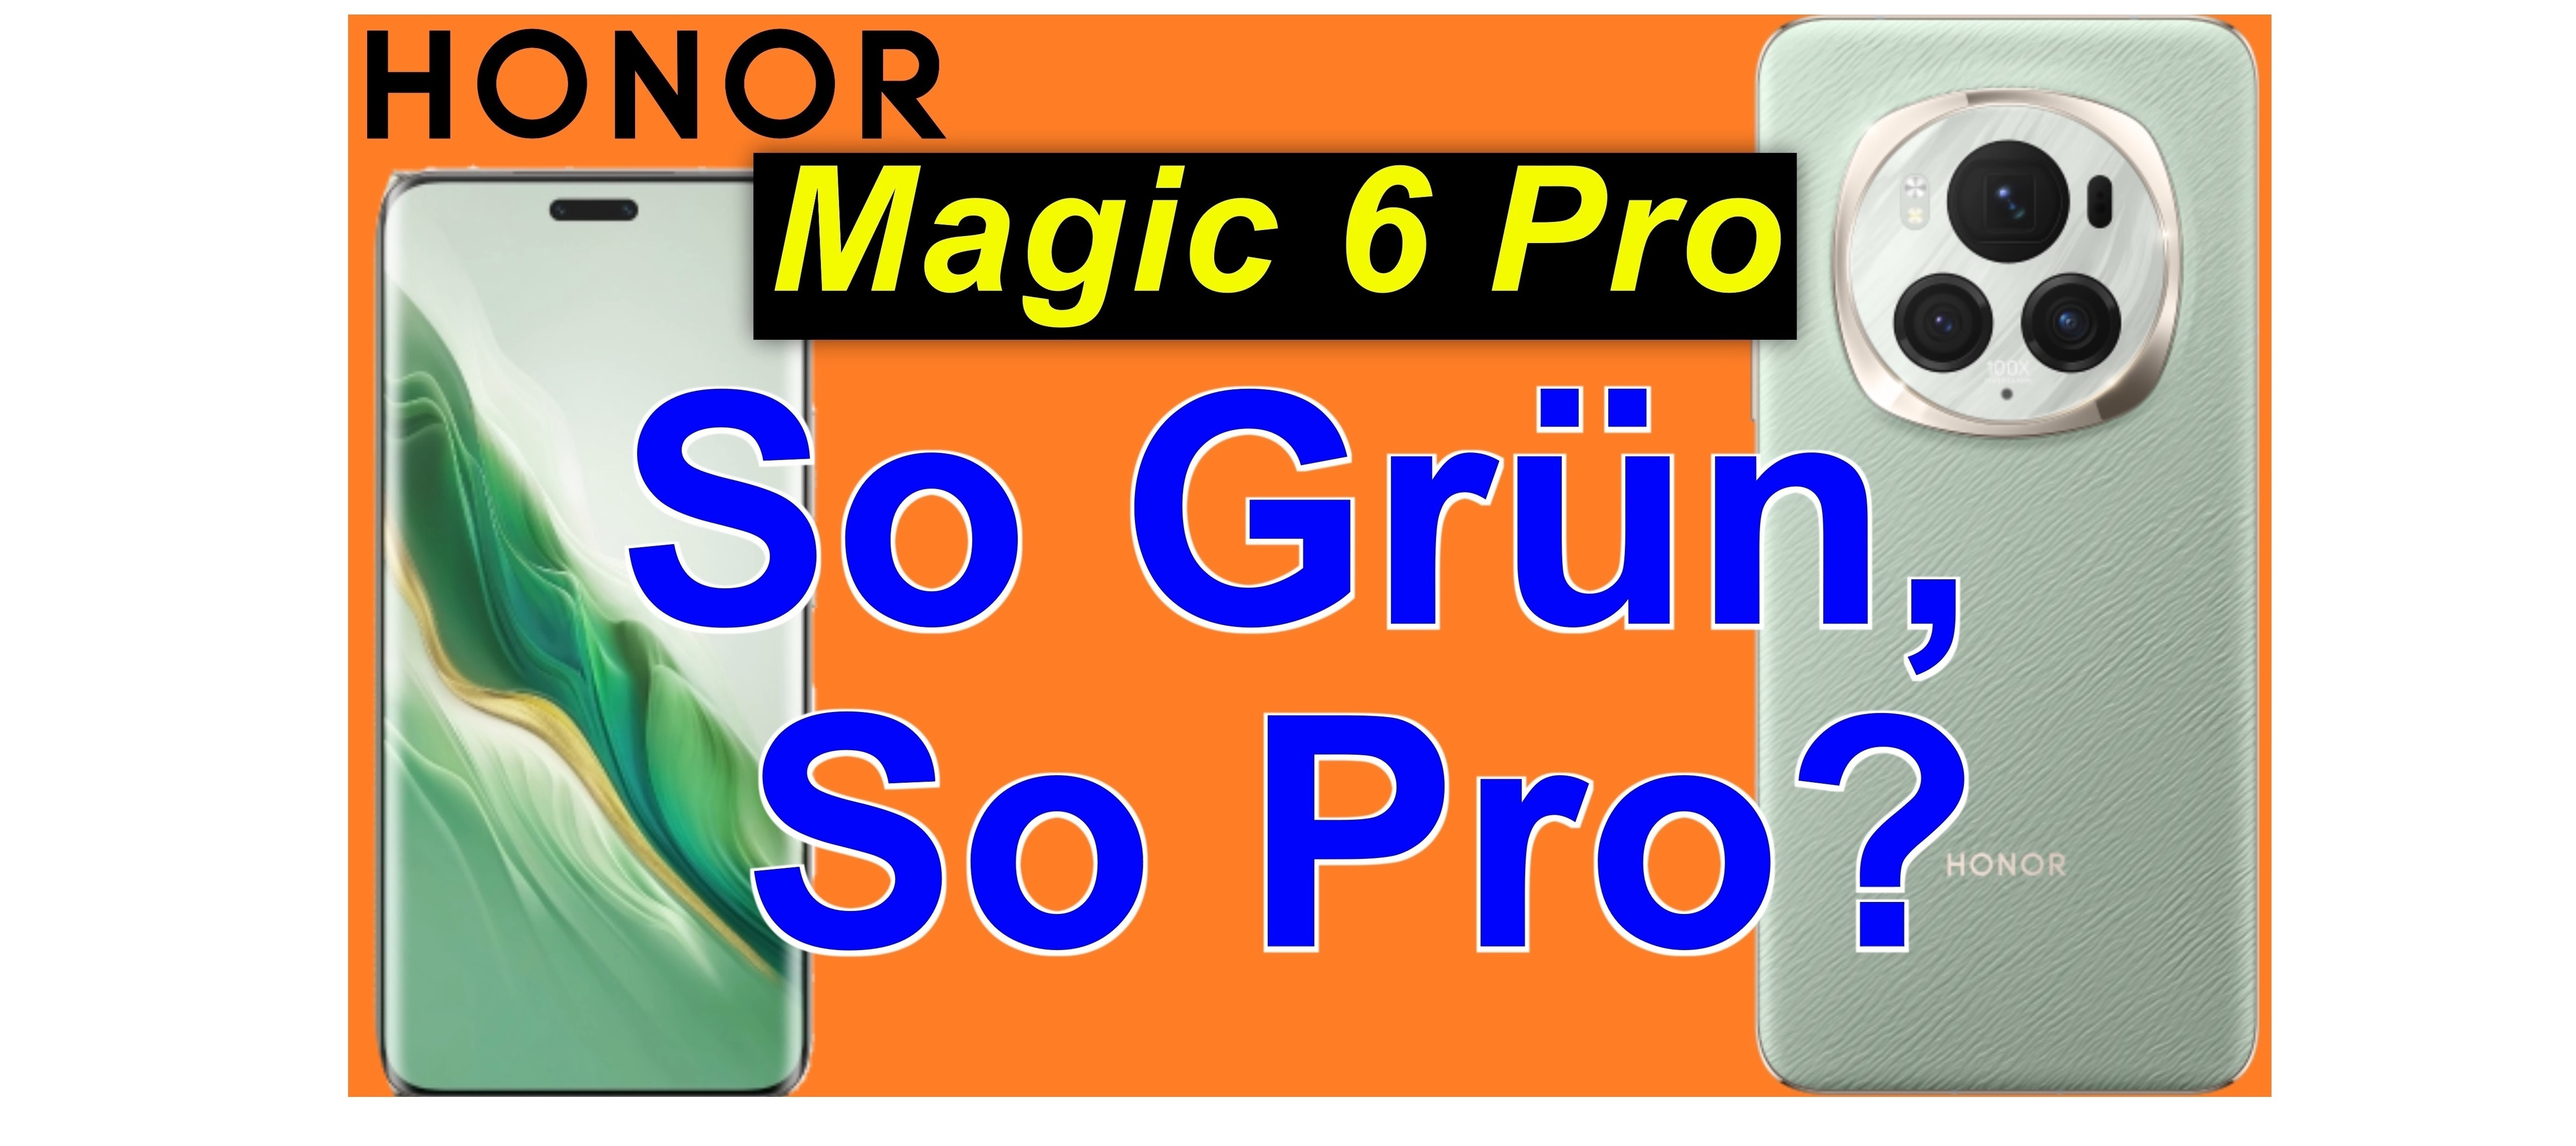 Honor Magic 6 Pro - auspacken und Ersteindruck | SeppelPower